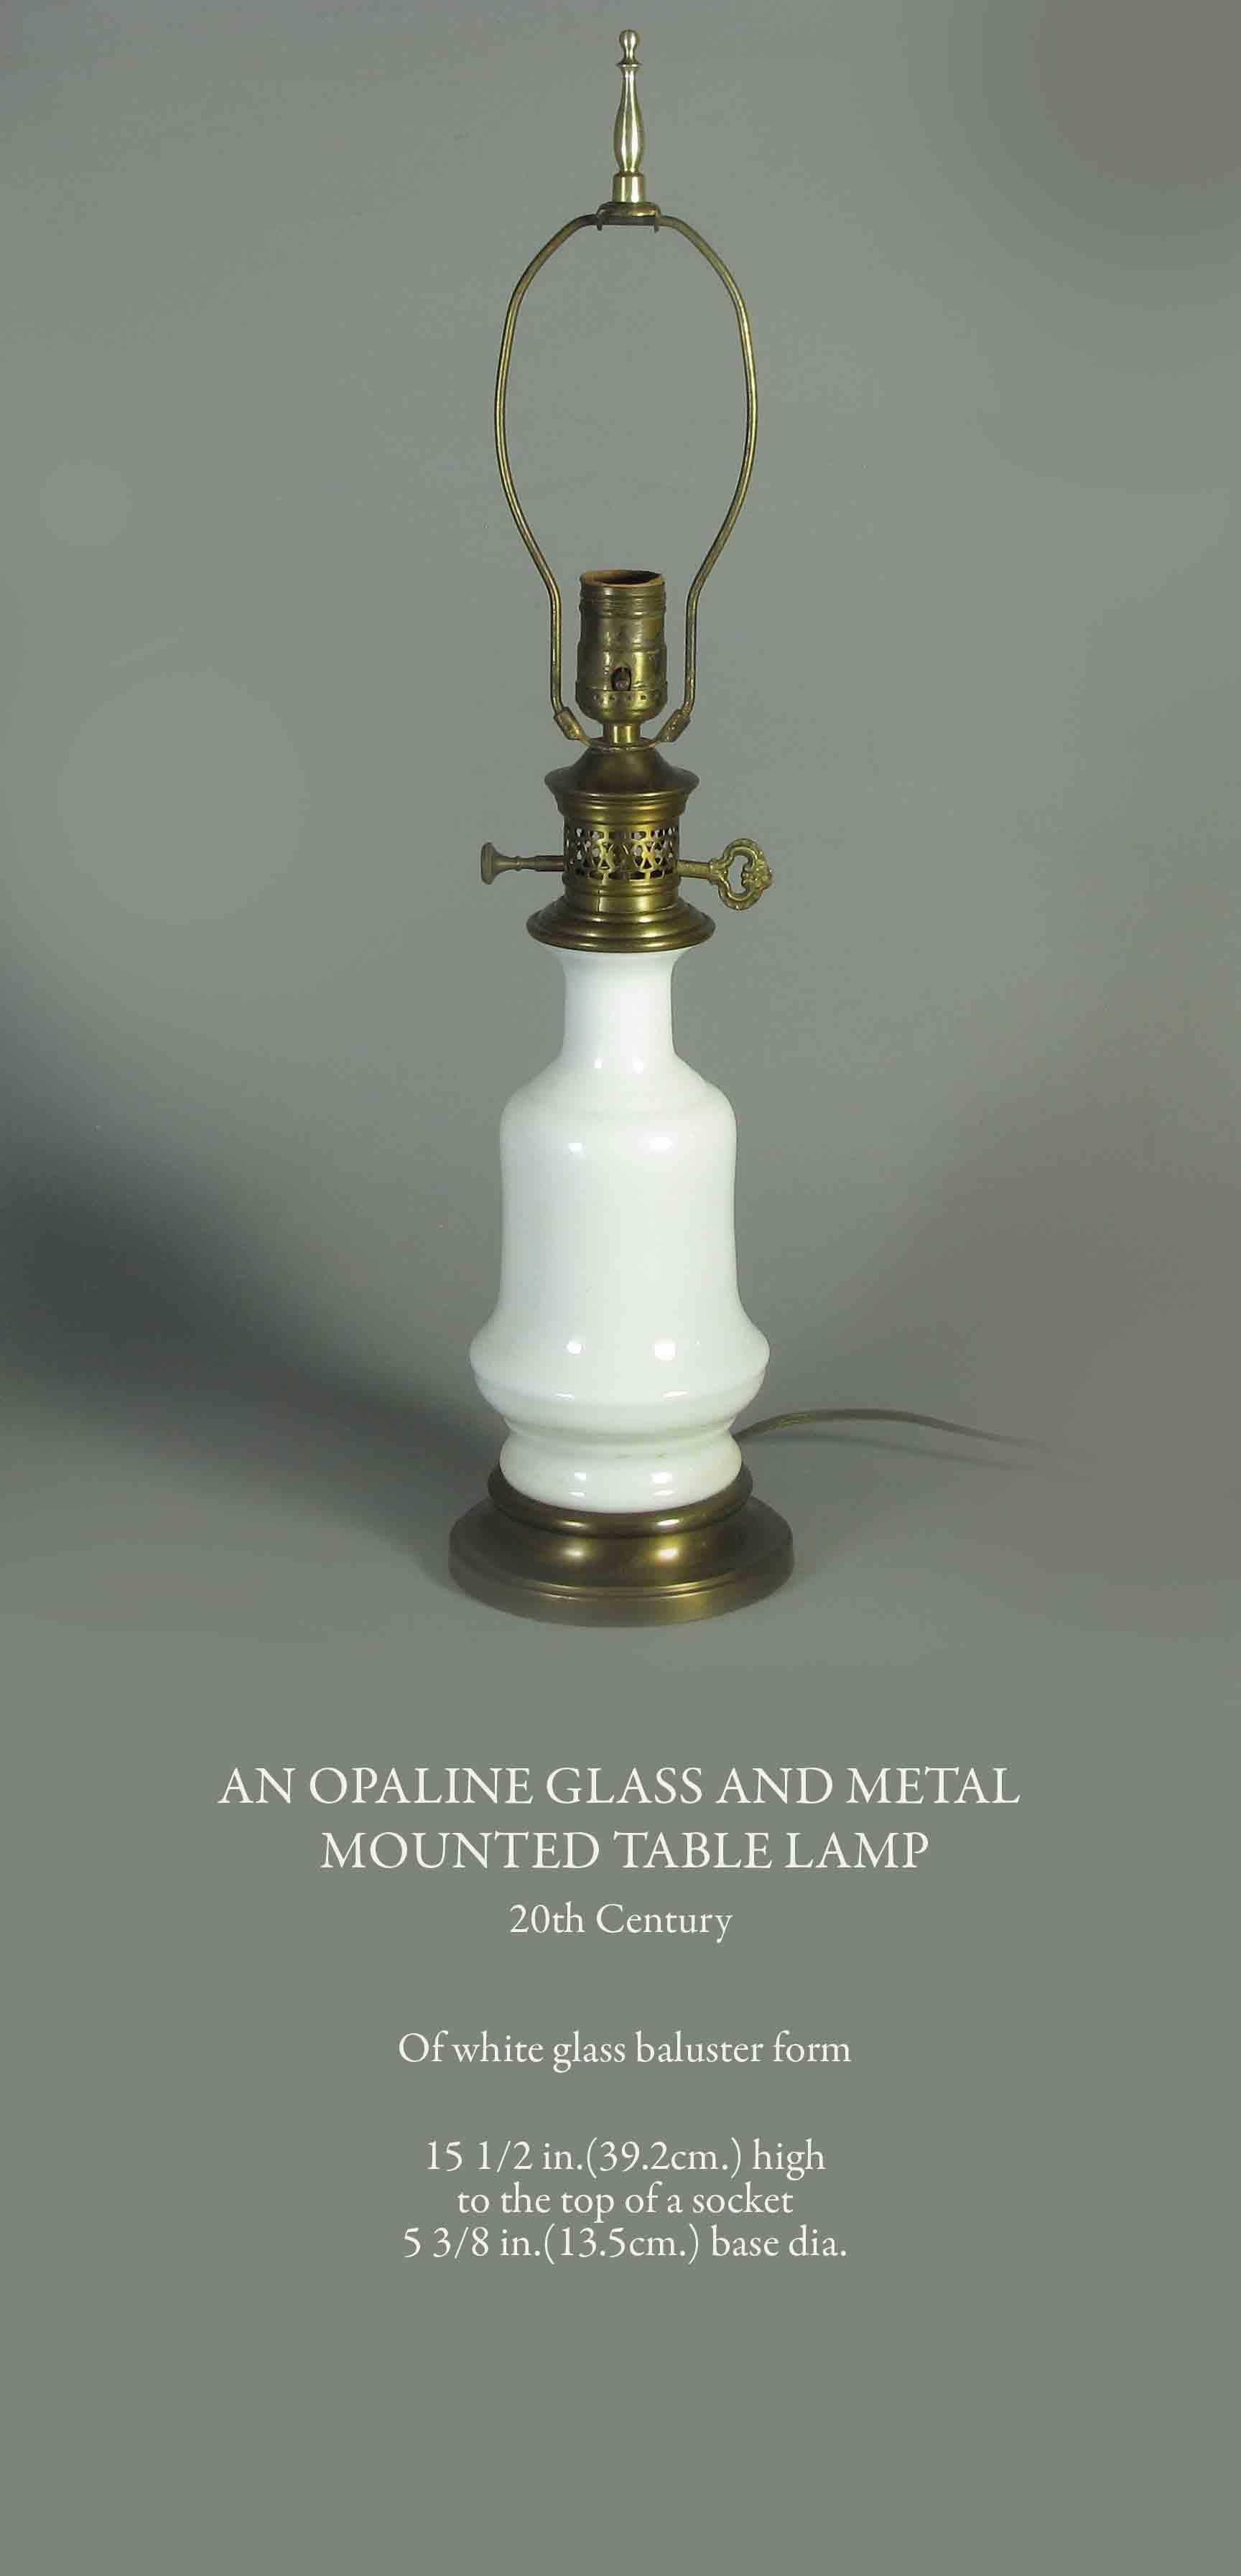 Opalglas und Metall
Tischlampe mit montierter Fassung
20. Jahrhundert. 

balusterförmiger weißer Glasbaluster.

15 1/2 Zoll (33,2 cm) hoch
bis zur Oberseite einer Fassung
5 3/8 Zoll (13,5 cm) Durchmesser des Sockels.